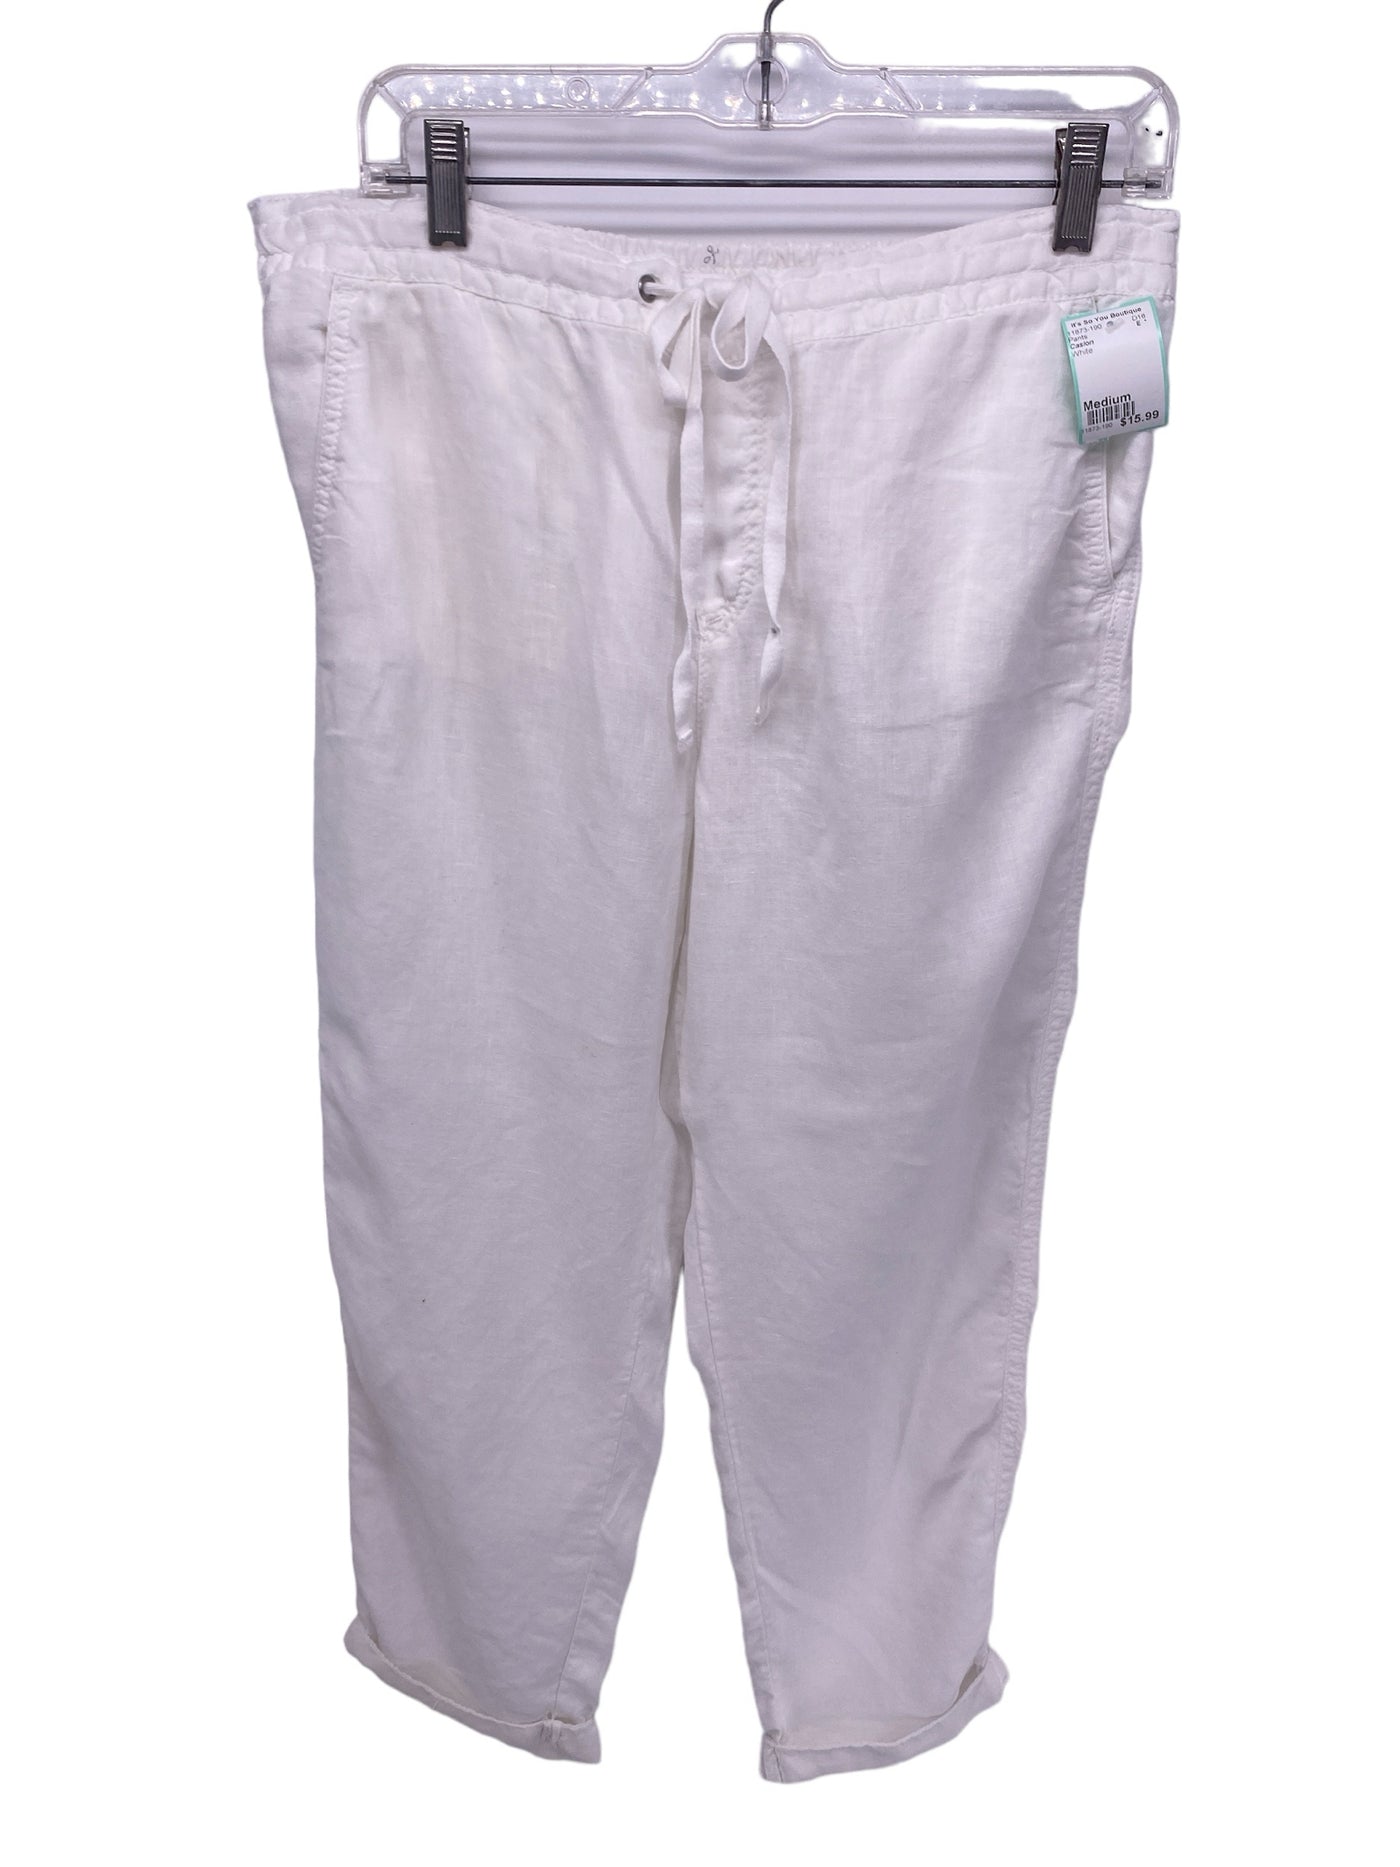 Caslon Misses Size Medium White Pants